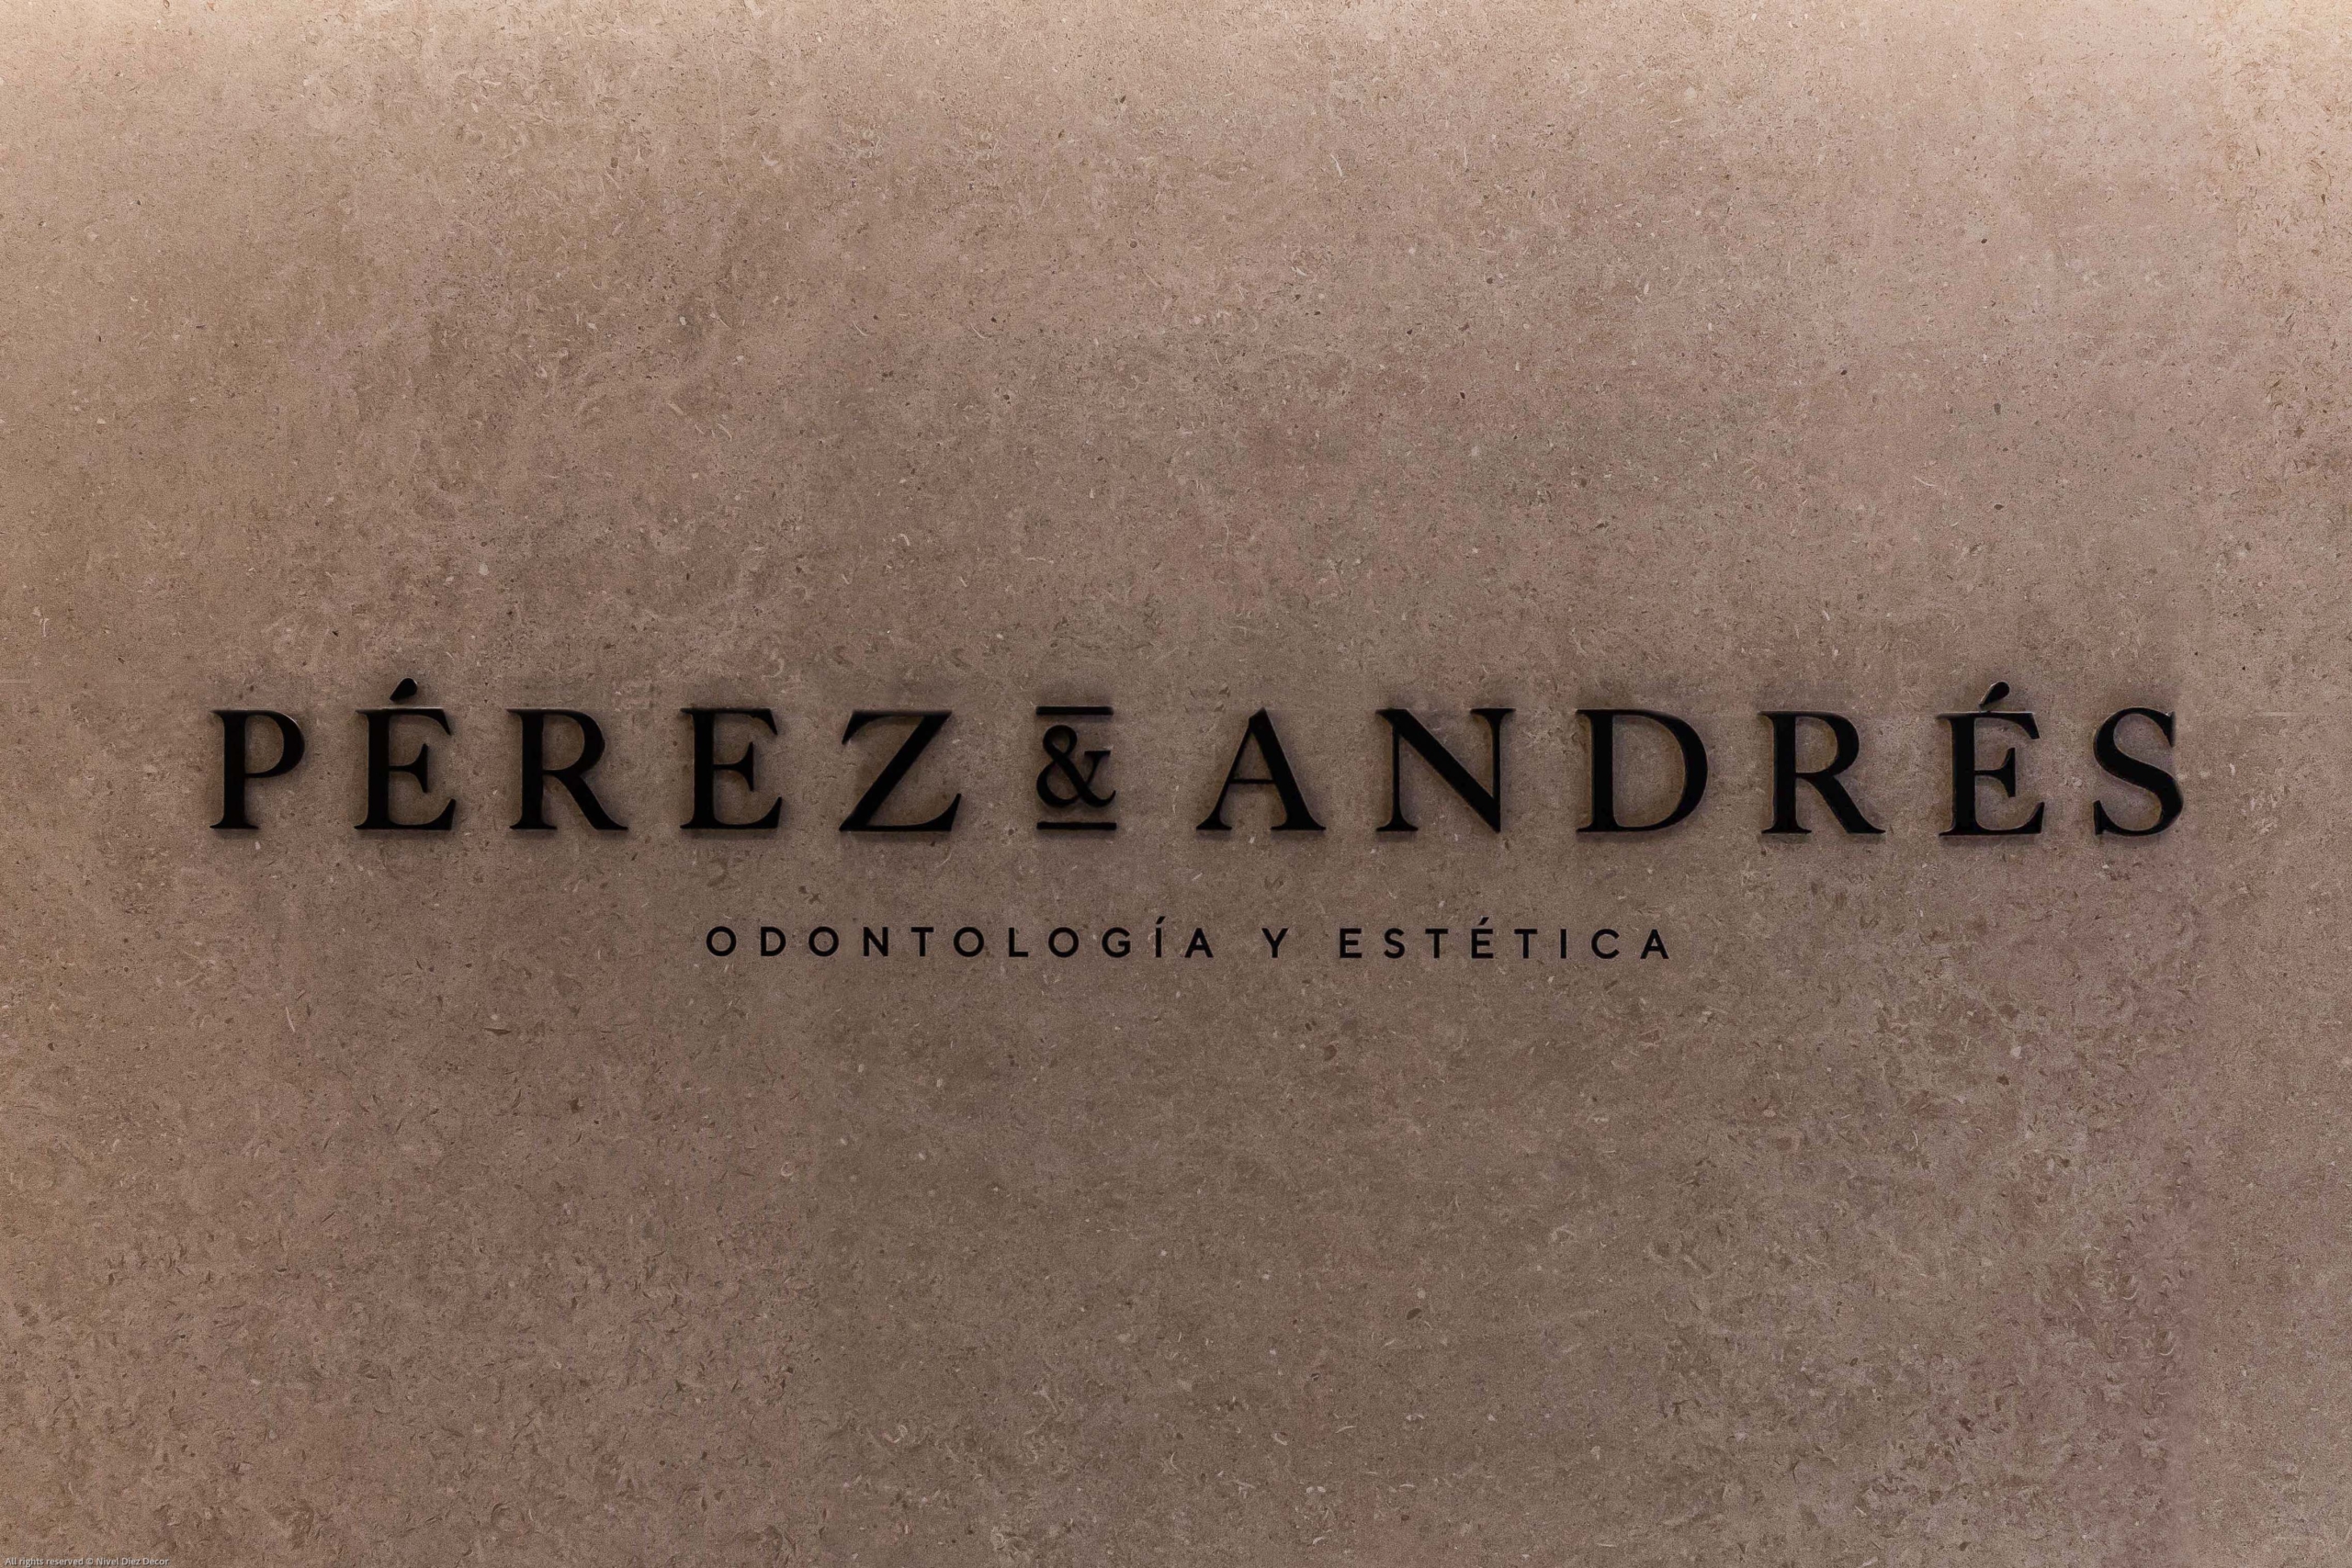 Diseño de logo con nombre ¨Perez y Andres¨